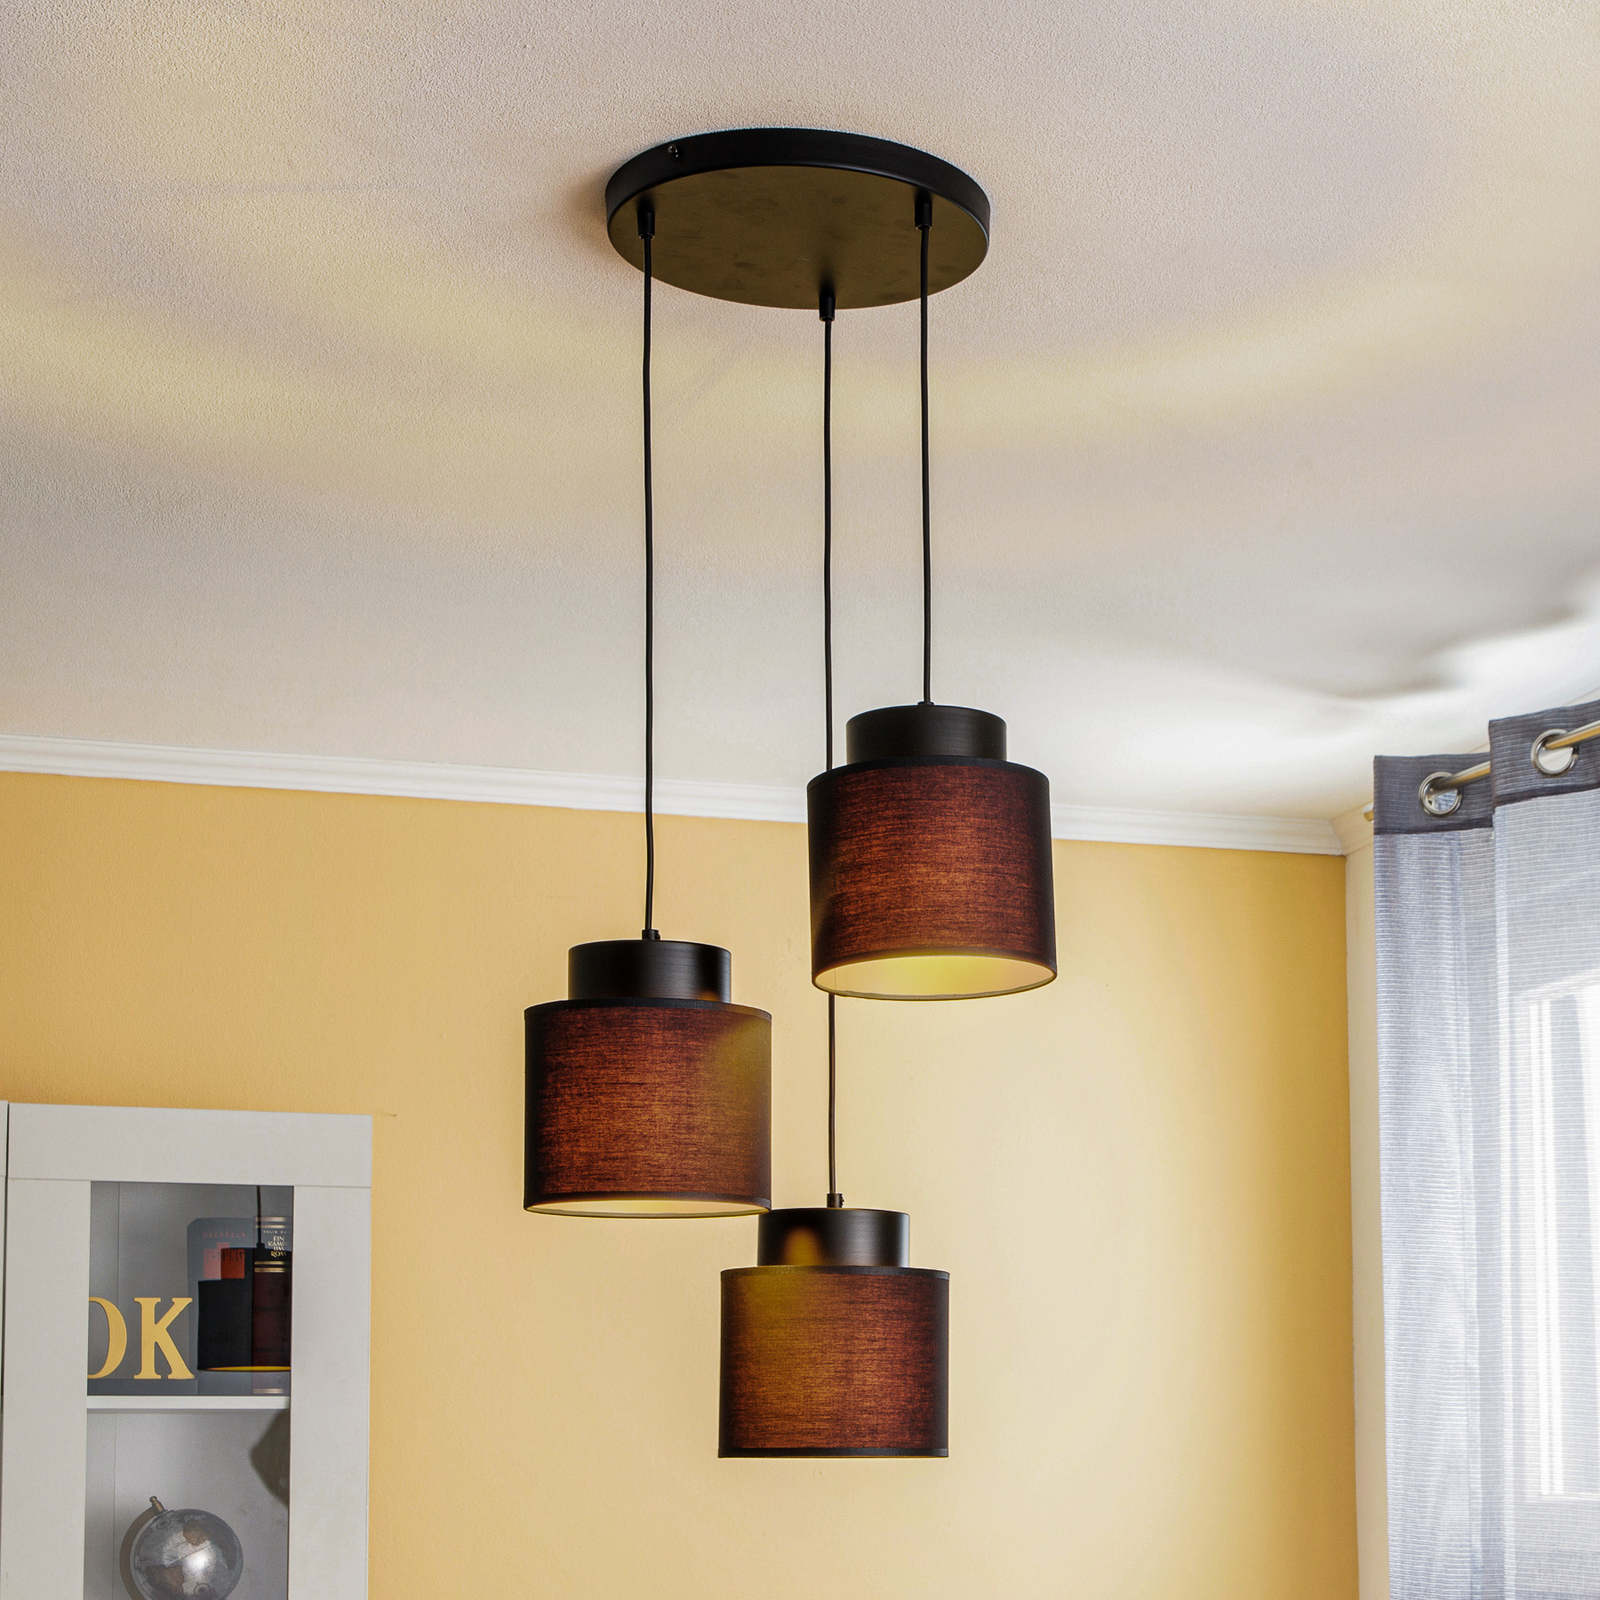 Hanglamp Soho cilindervormig rond 3flzwart/goud